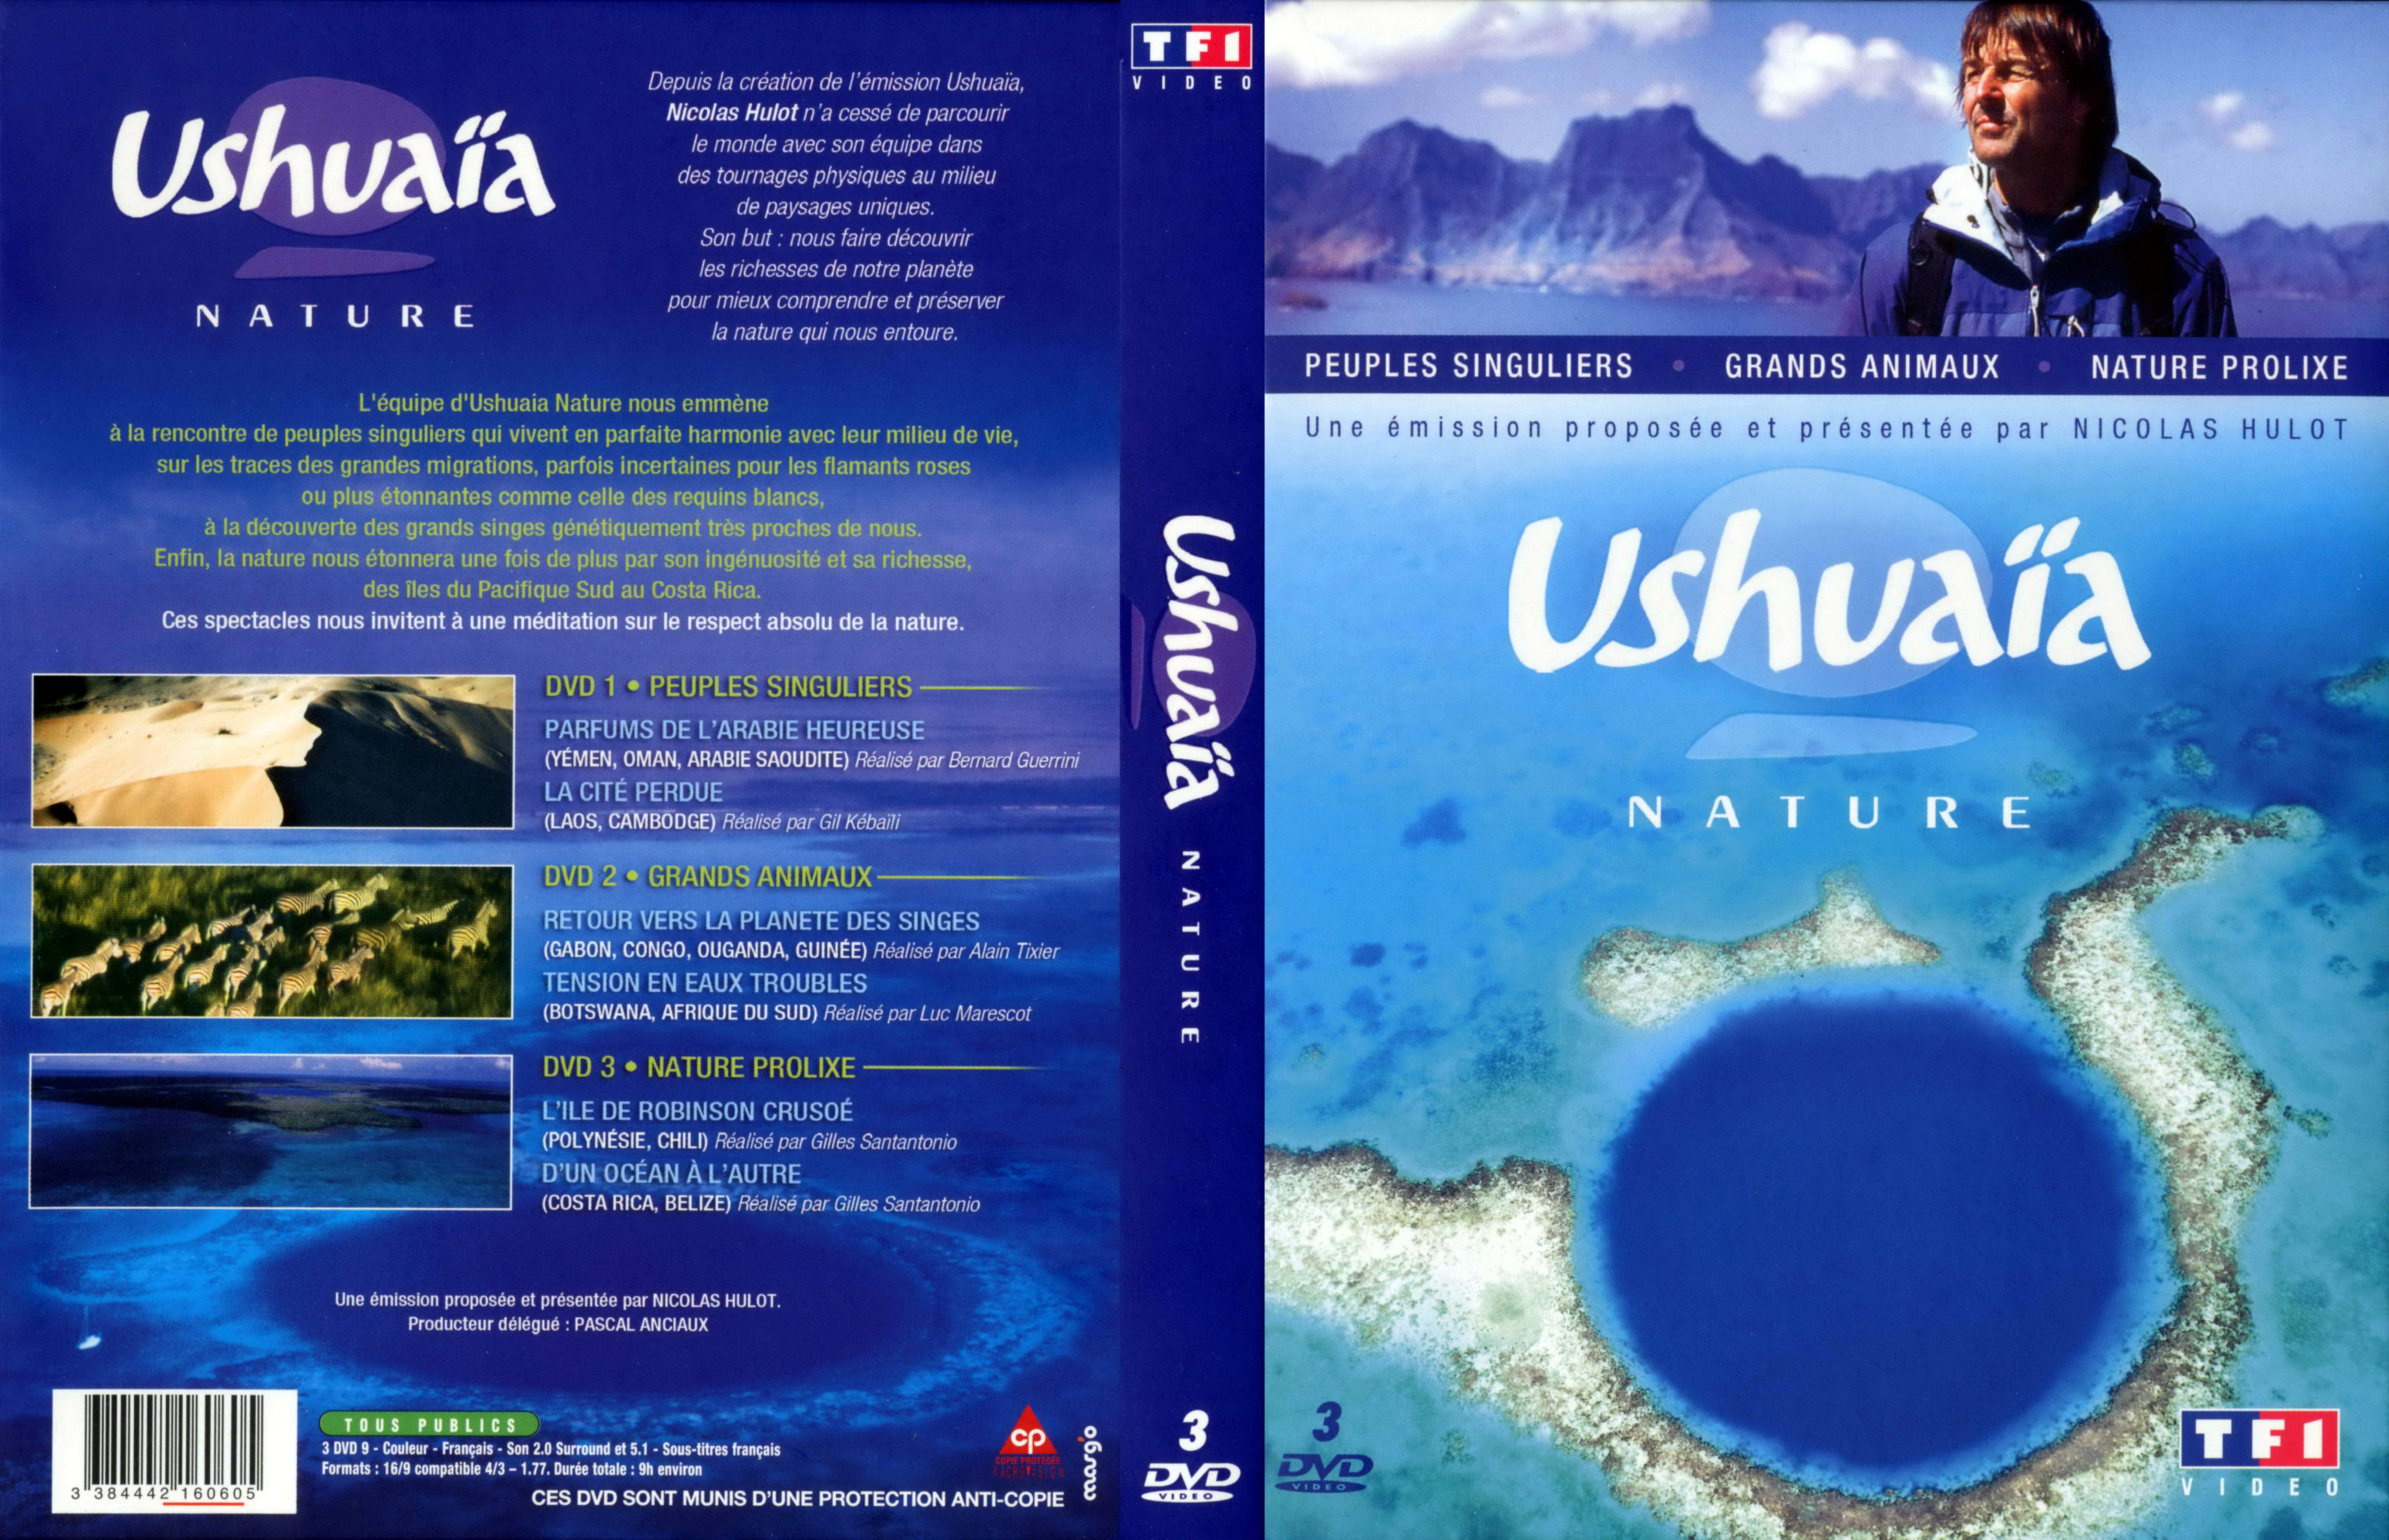 Jaquette DVD Ushuaia Nature - Peuples singuliers - Grands animaux  -Nature prolixe